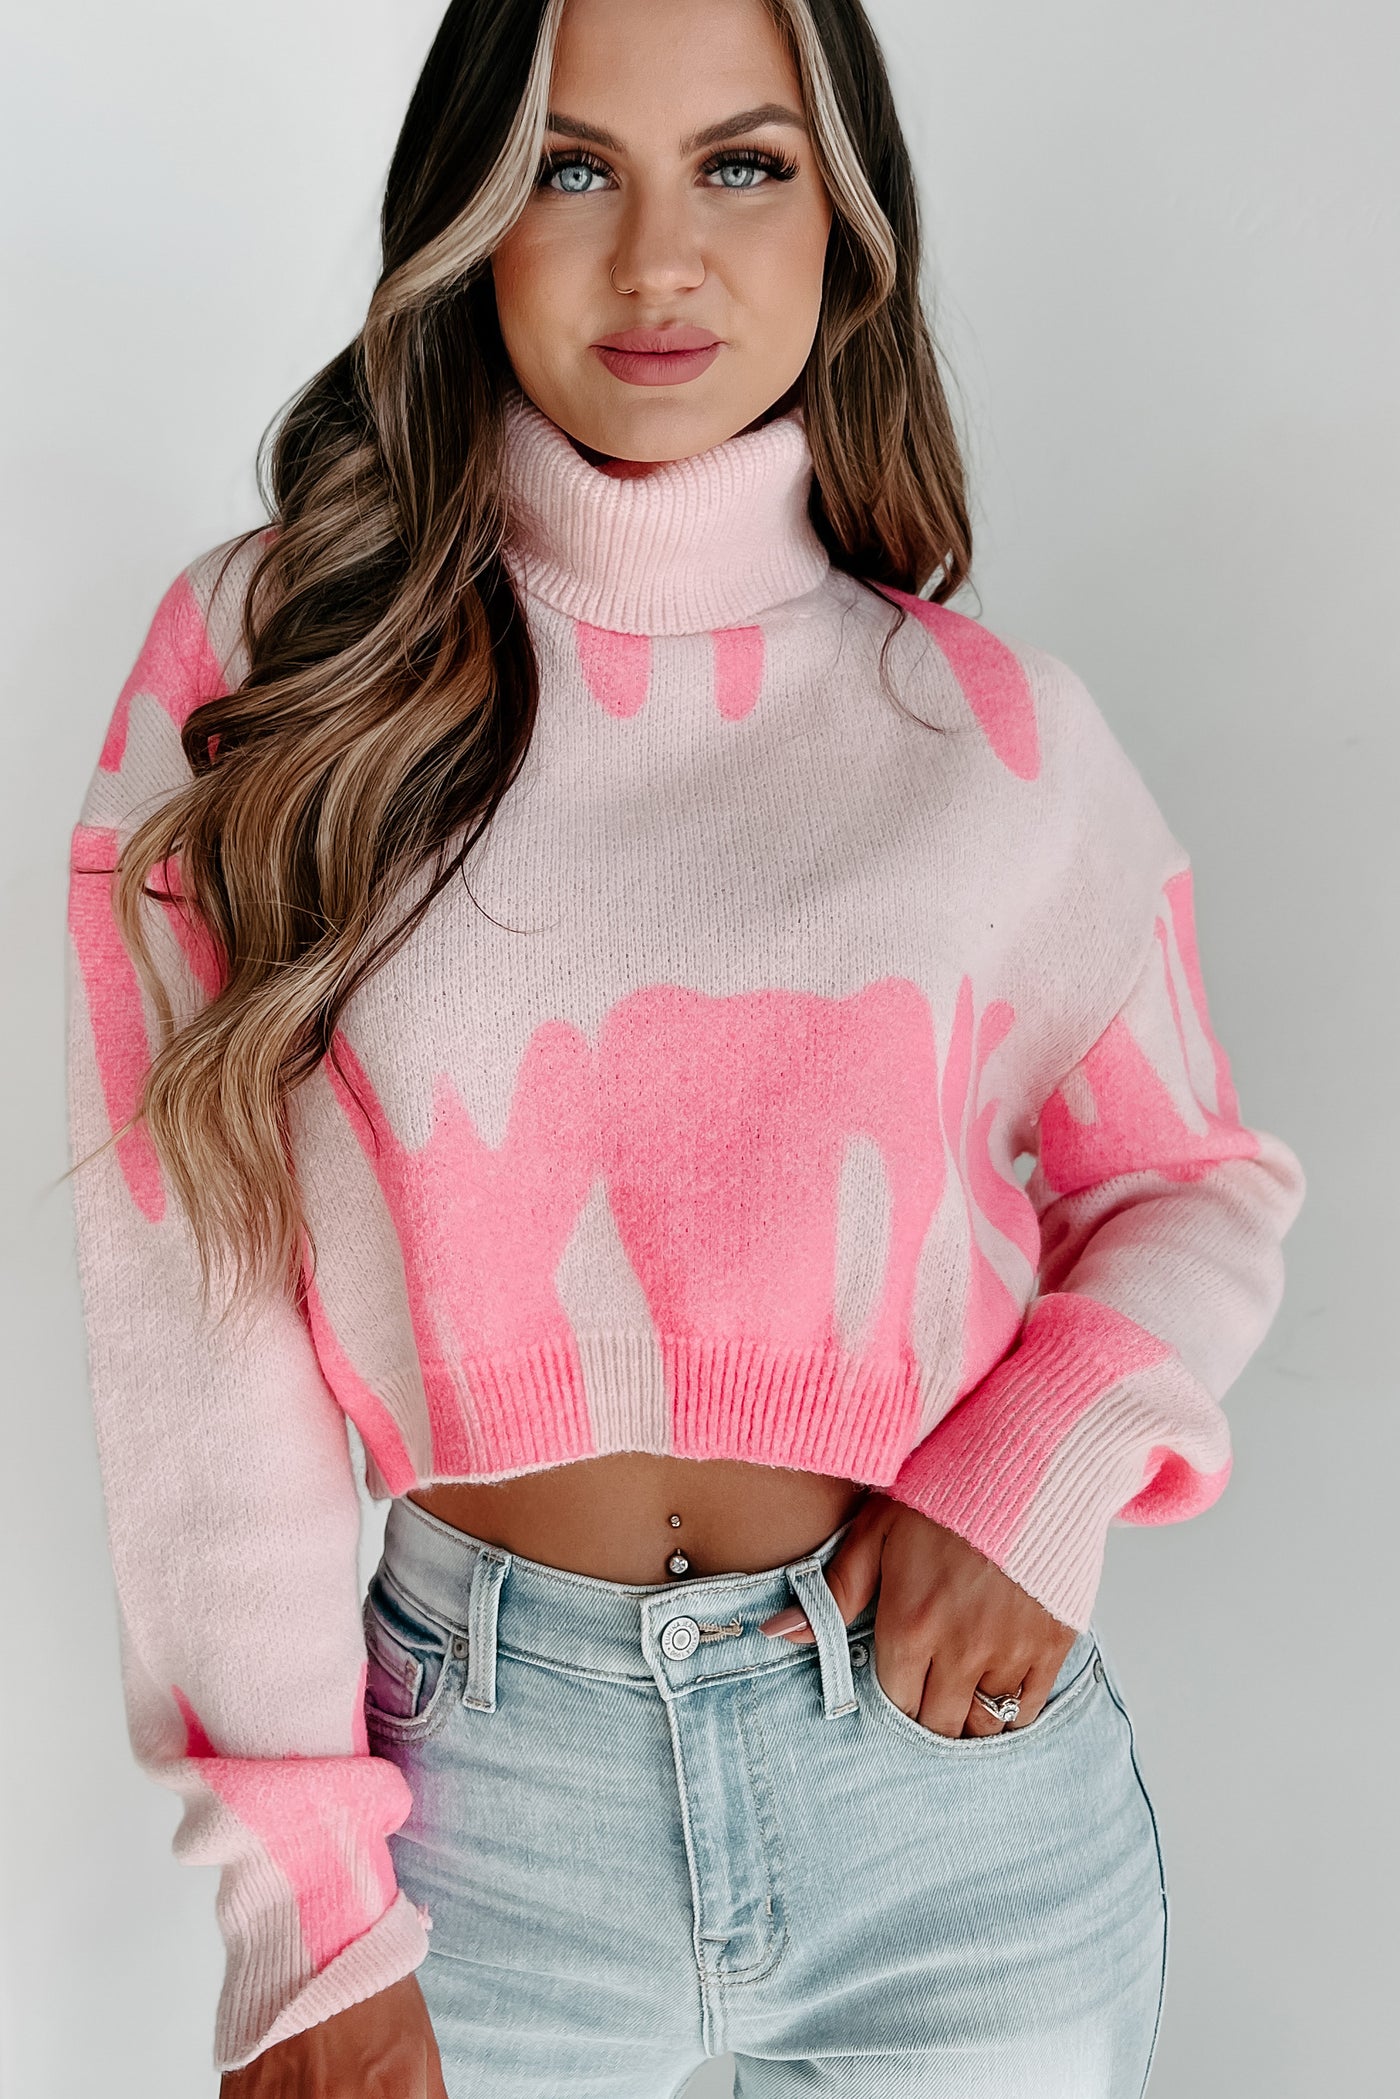 Artful Pursuits Cropped Turtleneck Sweater (Pink) - NanaMacs